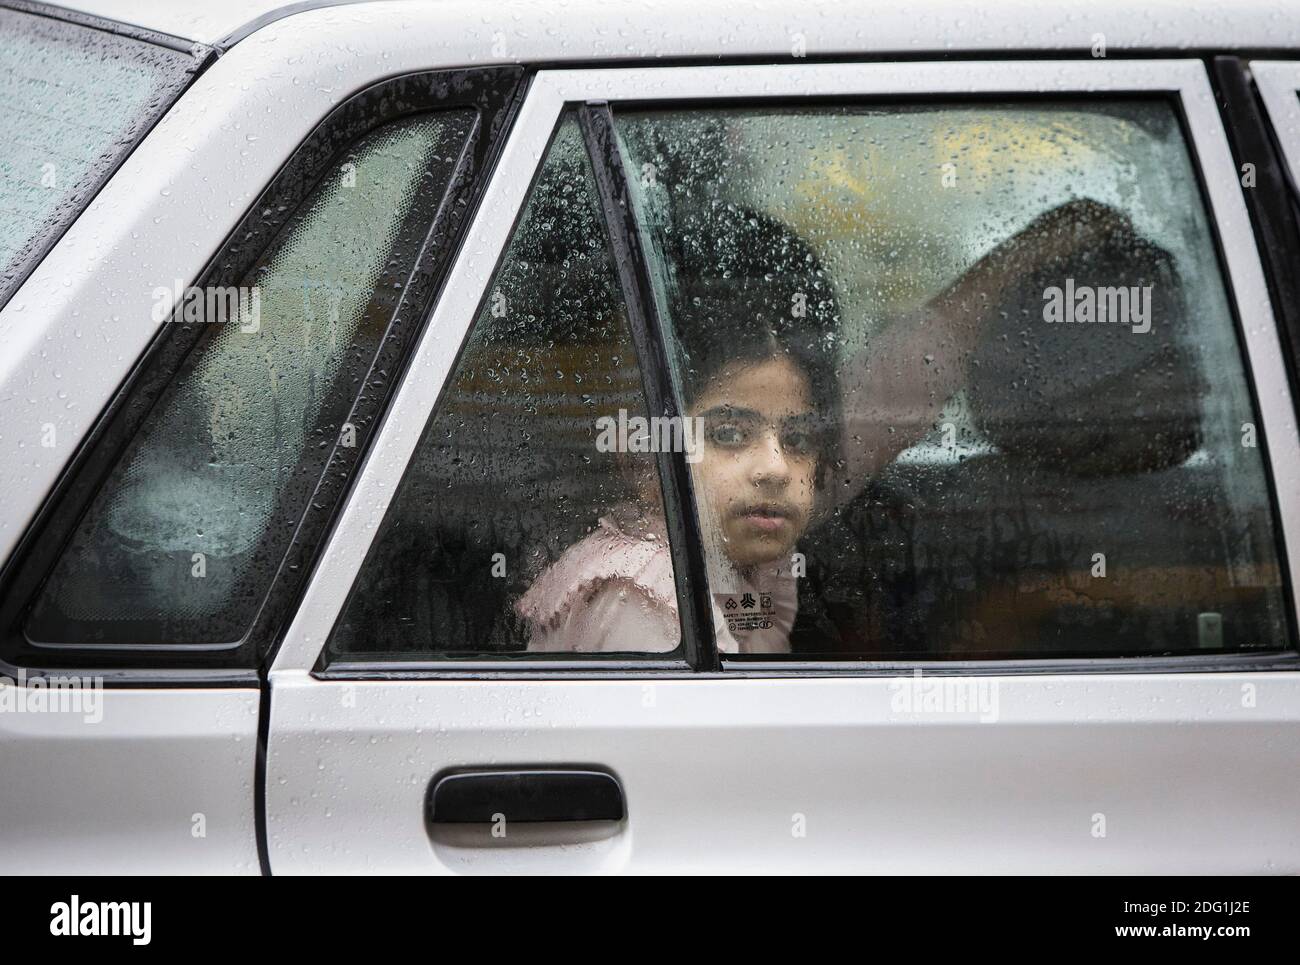 Tonekabon, Iran. 6 décembre 2020. Une fille est vue dans une voiture à Tonekabon, Iran, 6 décembre 2020. L'Iran a signalé lundi 10,827 nouvelles infections à COVID-19 au cours des 24 dernières heures, ce qui a rapporté 1,051,374 dans le pays. Credit: Ahmad Halabisaz/Xinhua/Alamy Live News Banque D'Images